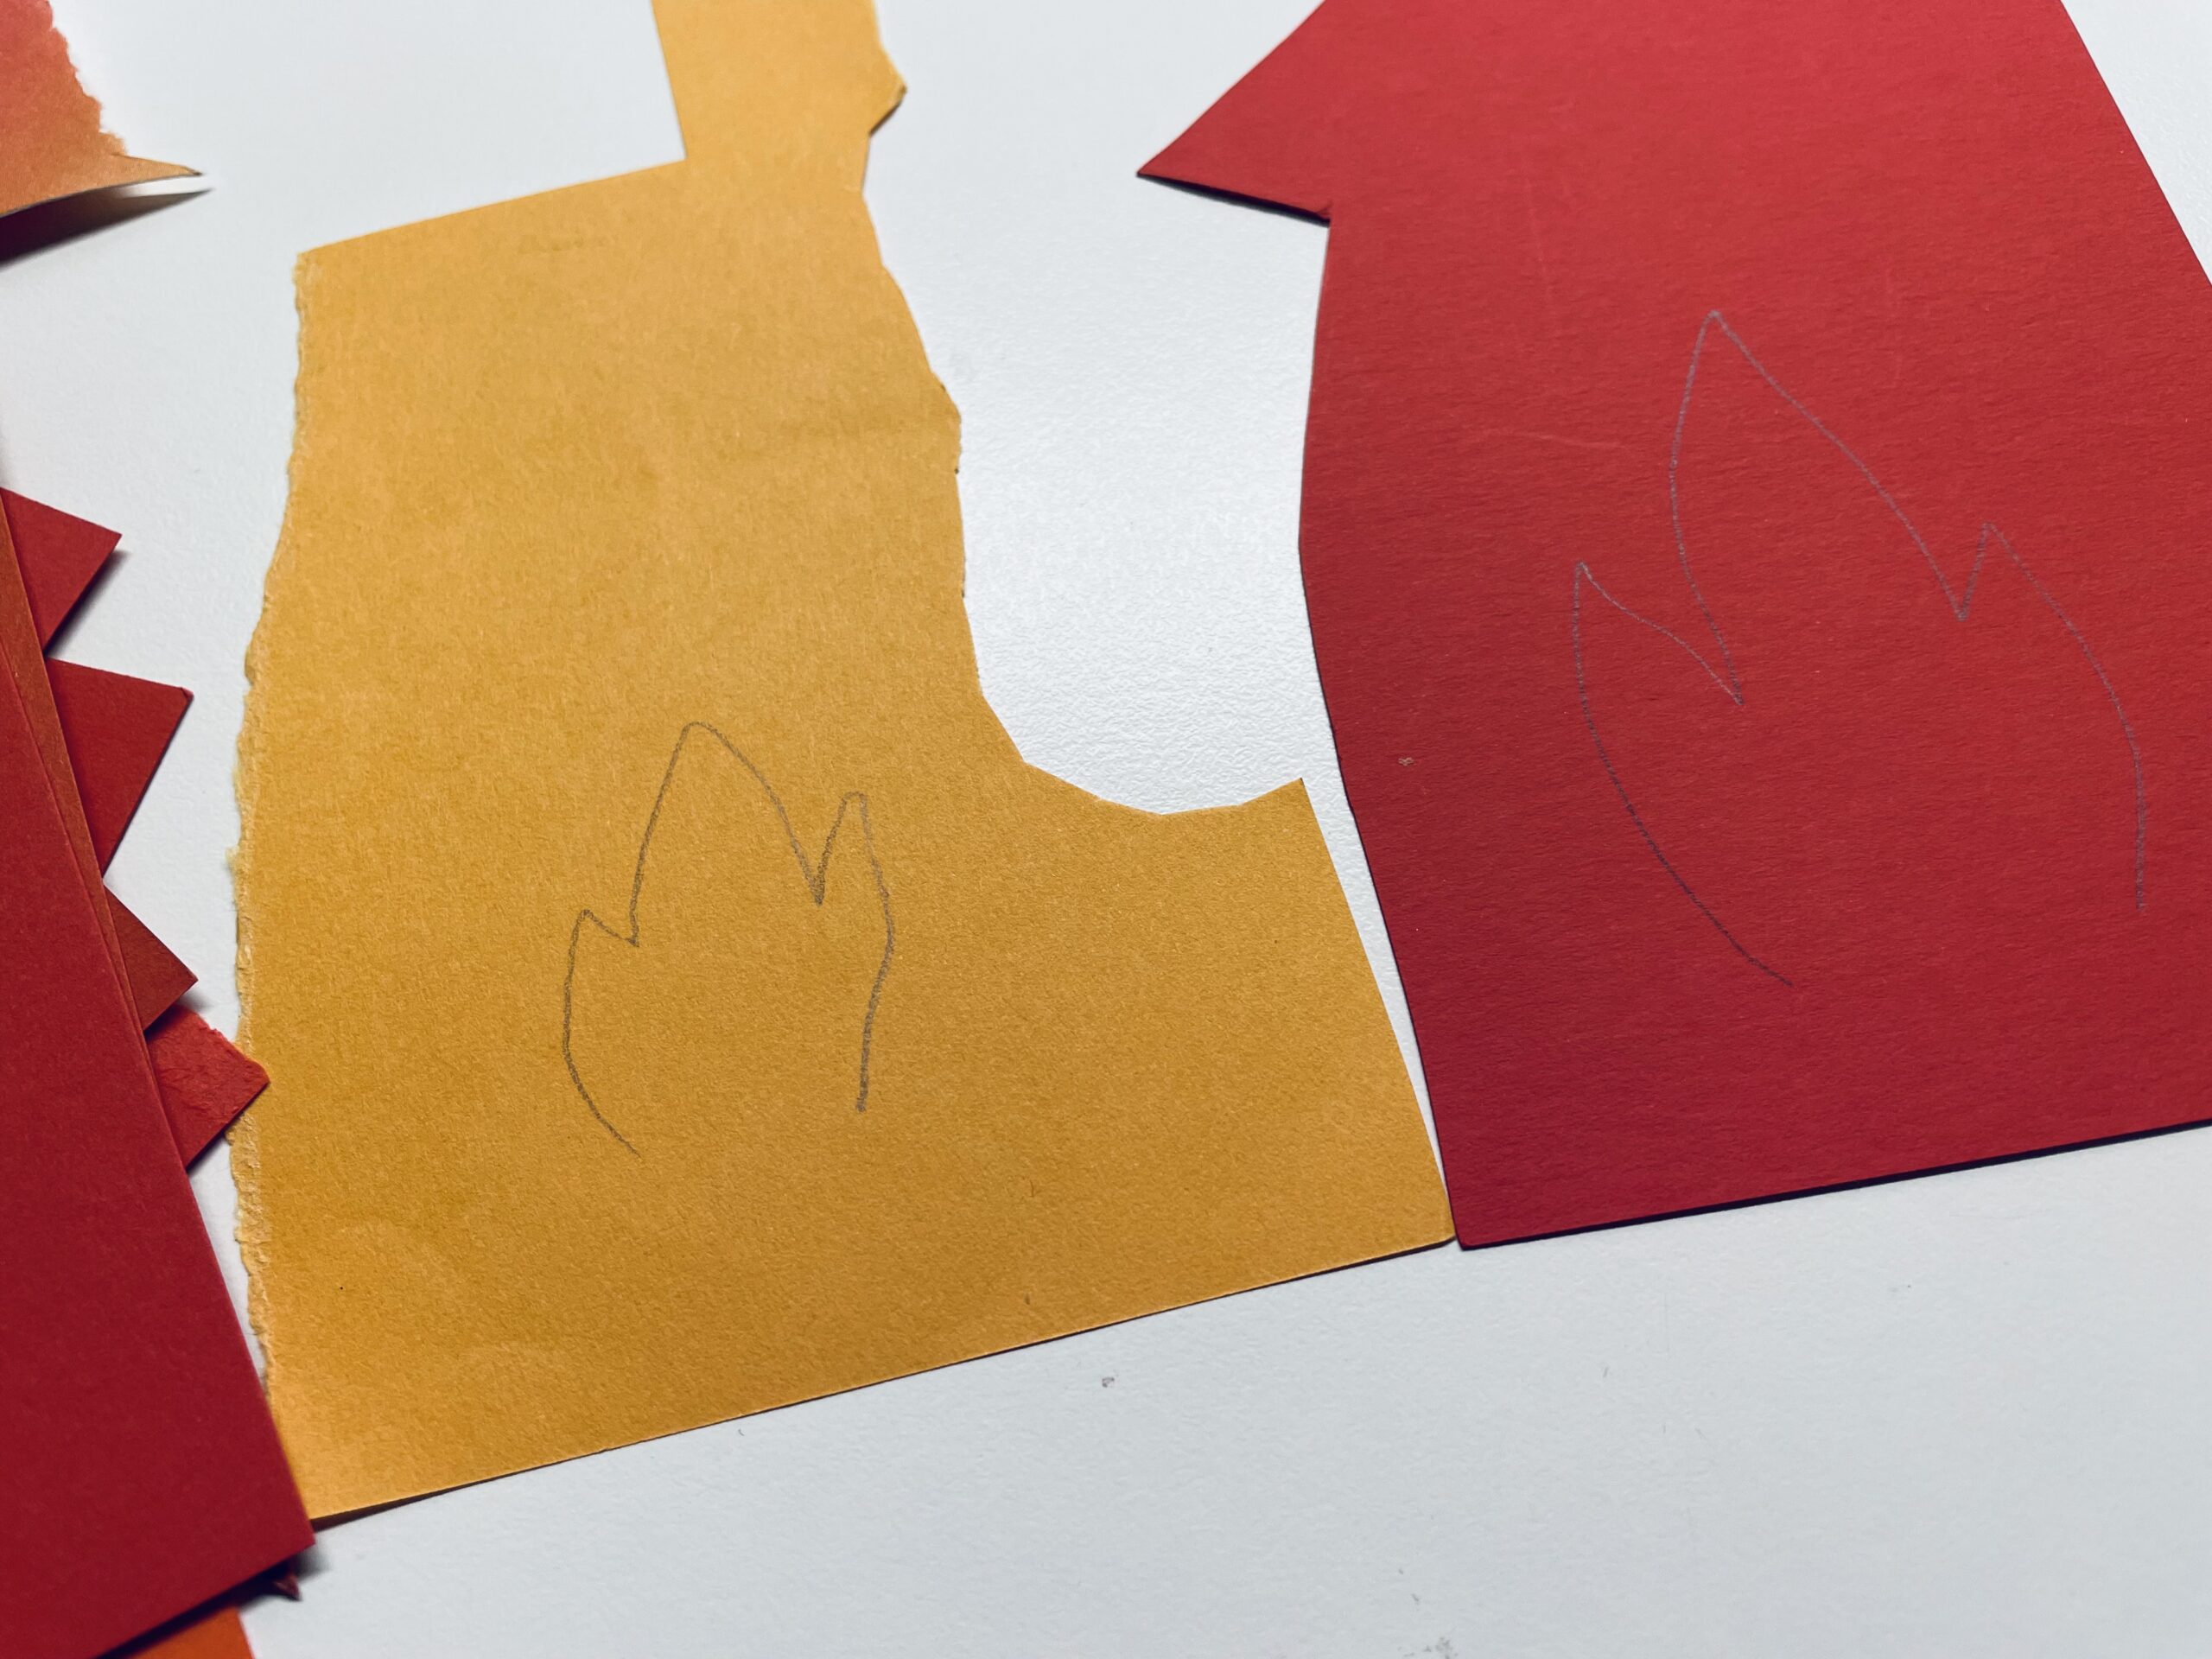 Bild zum Schritt 13 für das Bastel- und DIY-Abenteuer für Kinder: 'Malt eine große Flamme auf das rote Papier und eine...'